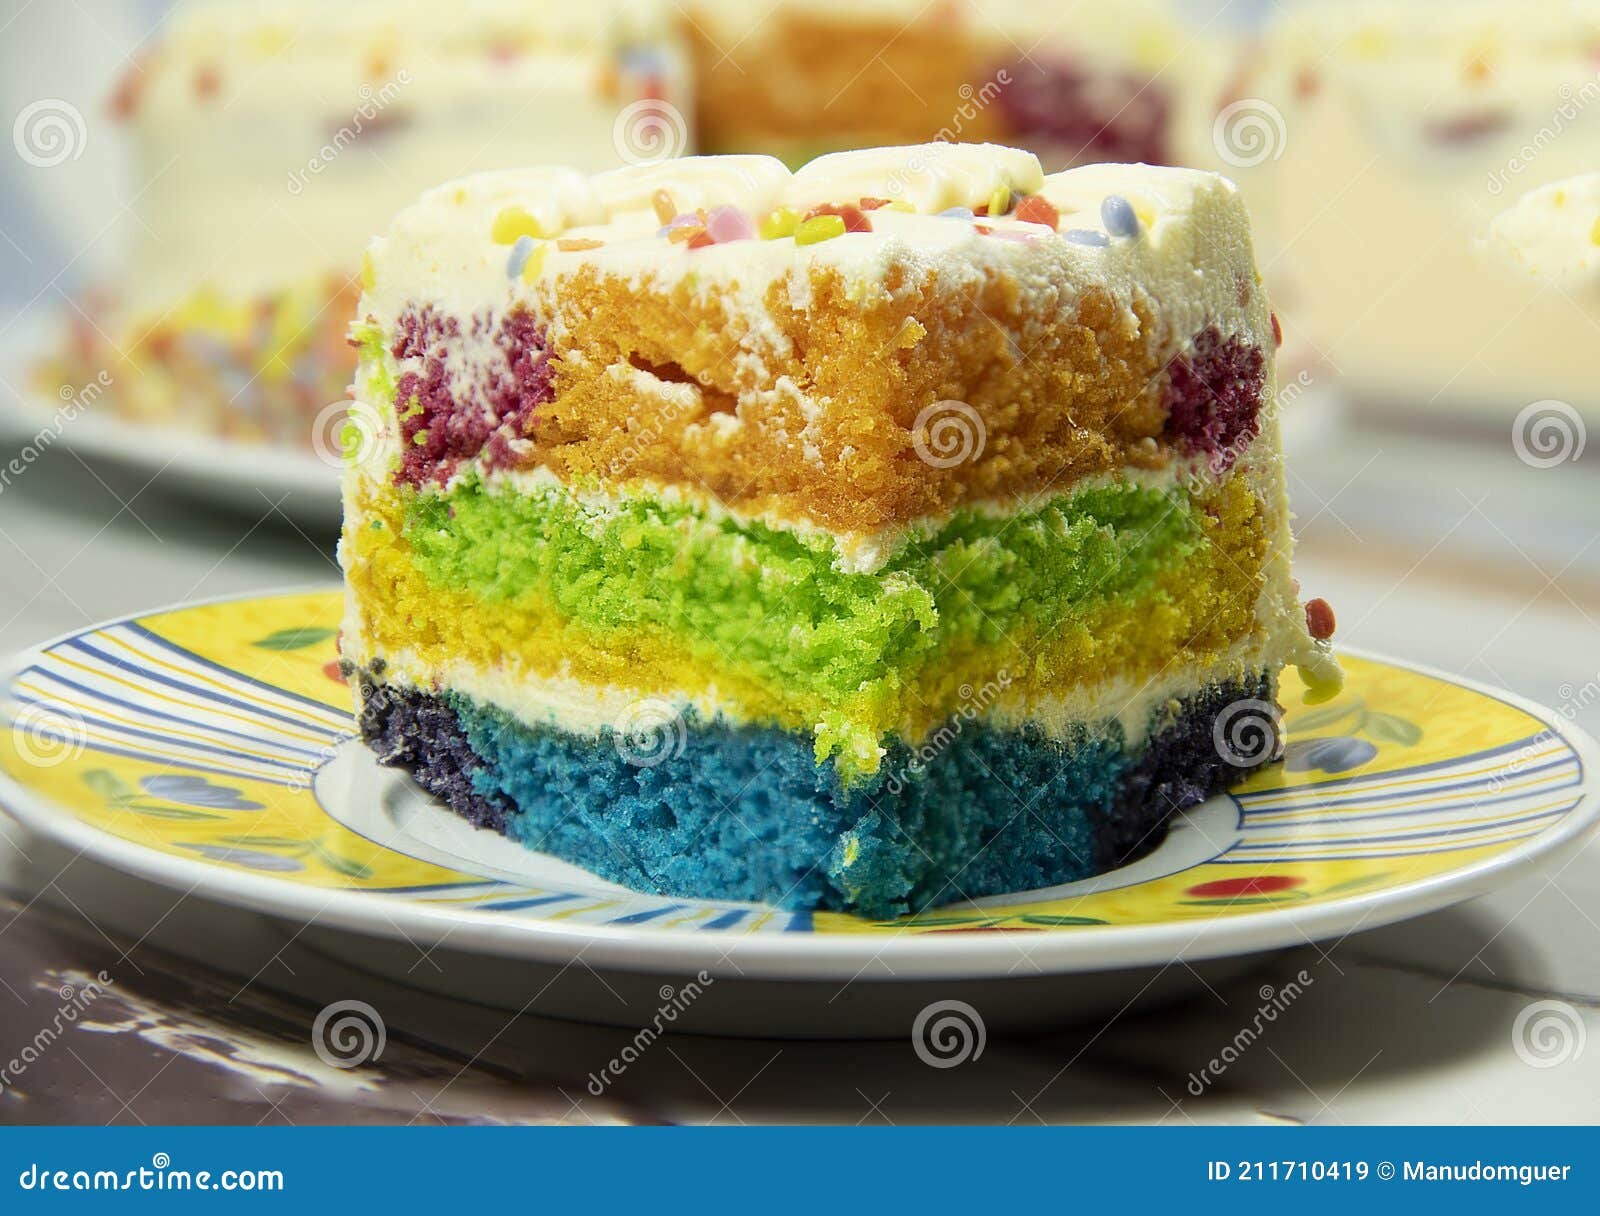 彩虹蛋糕的做法图解 _排行榜大全